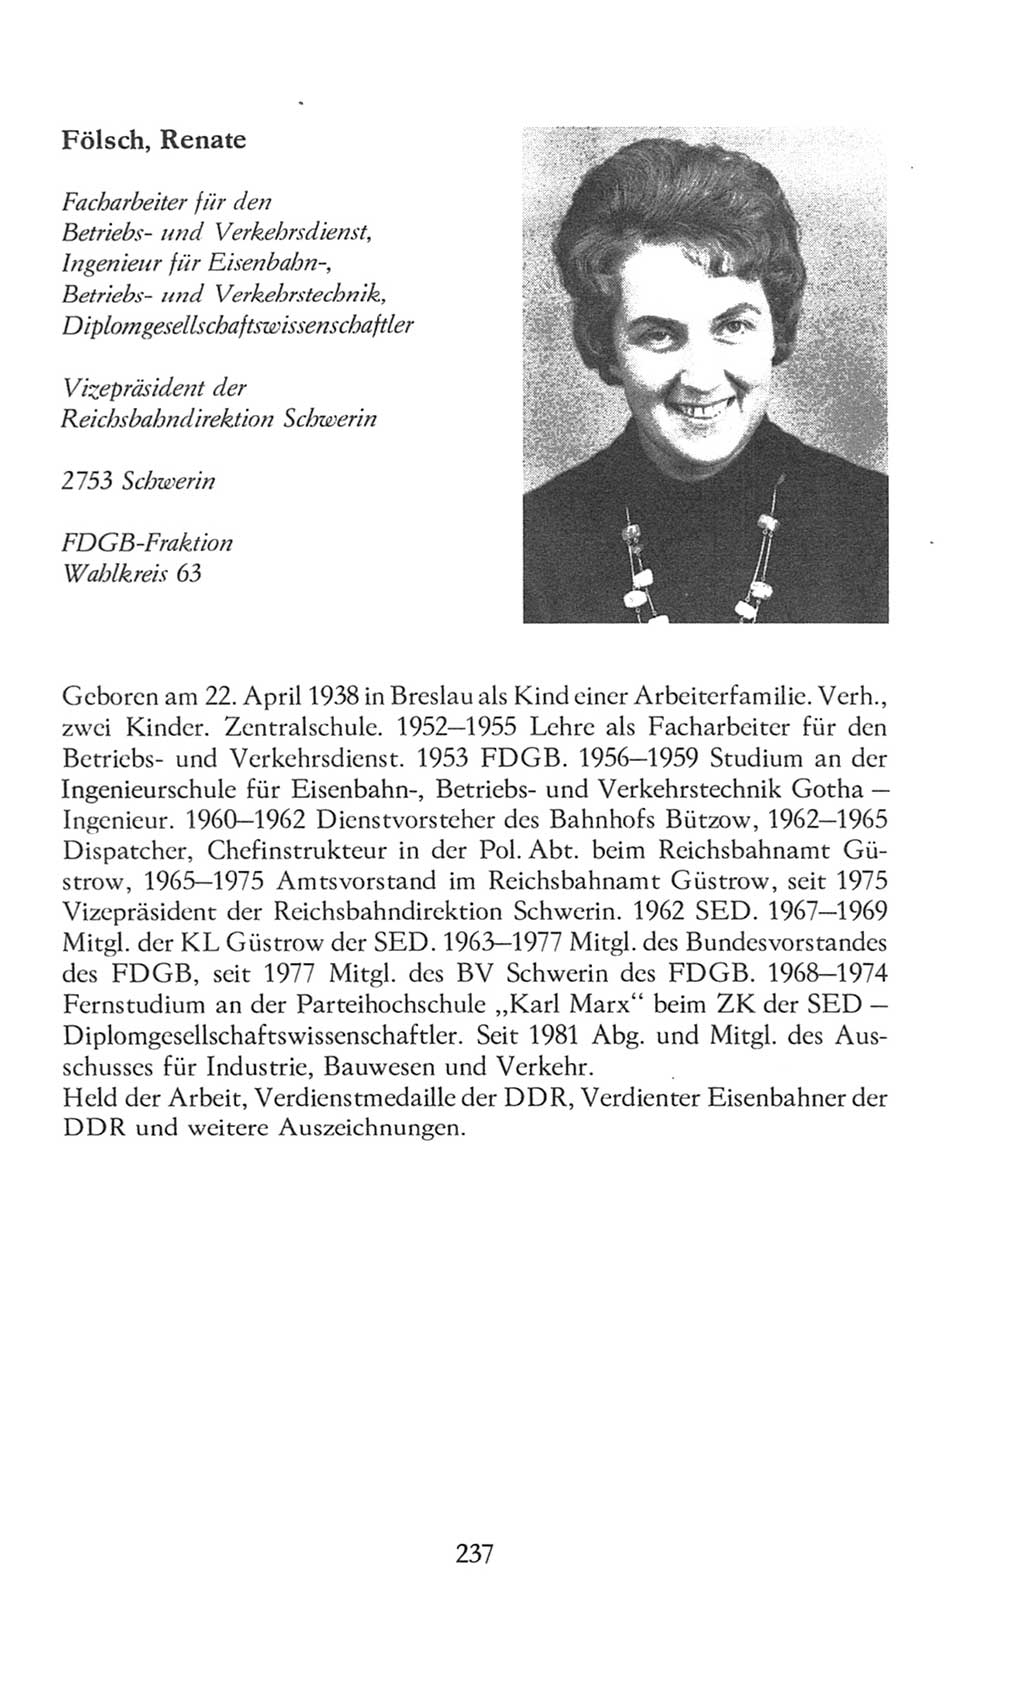 Volkskammer (VK) der Deutschen Demokratischen Republik (DDR), 8. Wahlperiode 1981-1986, Seite 237 (VK. DDR 8. WP. 1981-1986, S. 237)